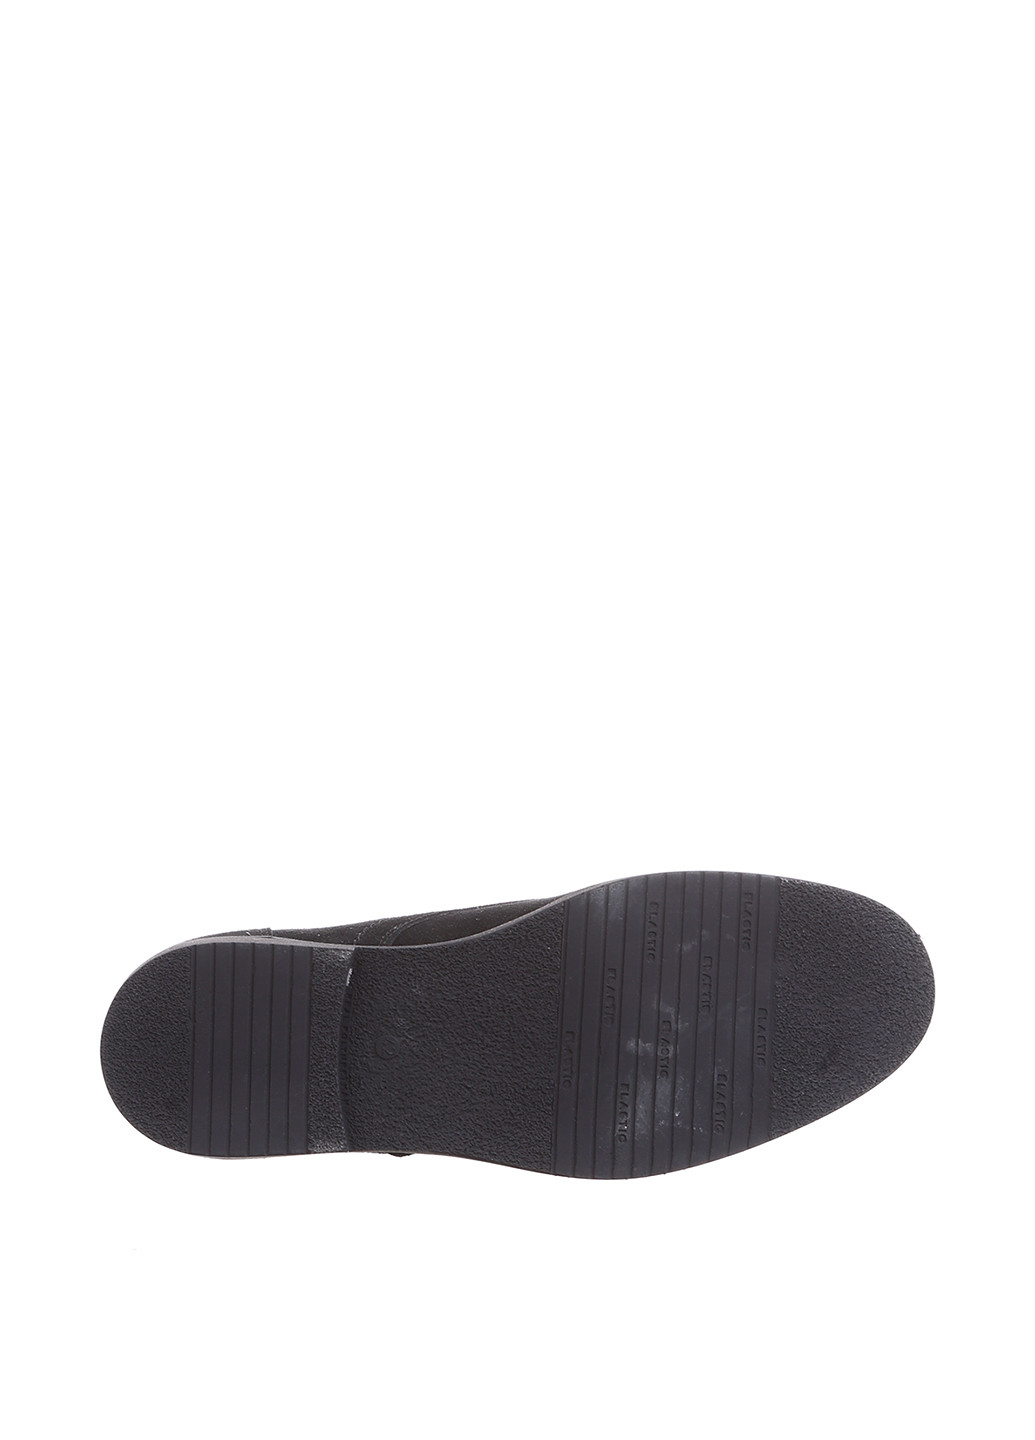 Черные осенние ботинки дезерты Westland